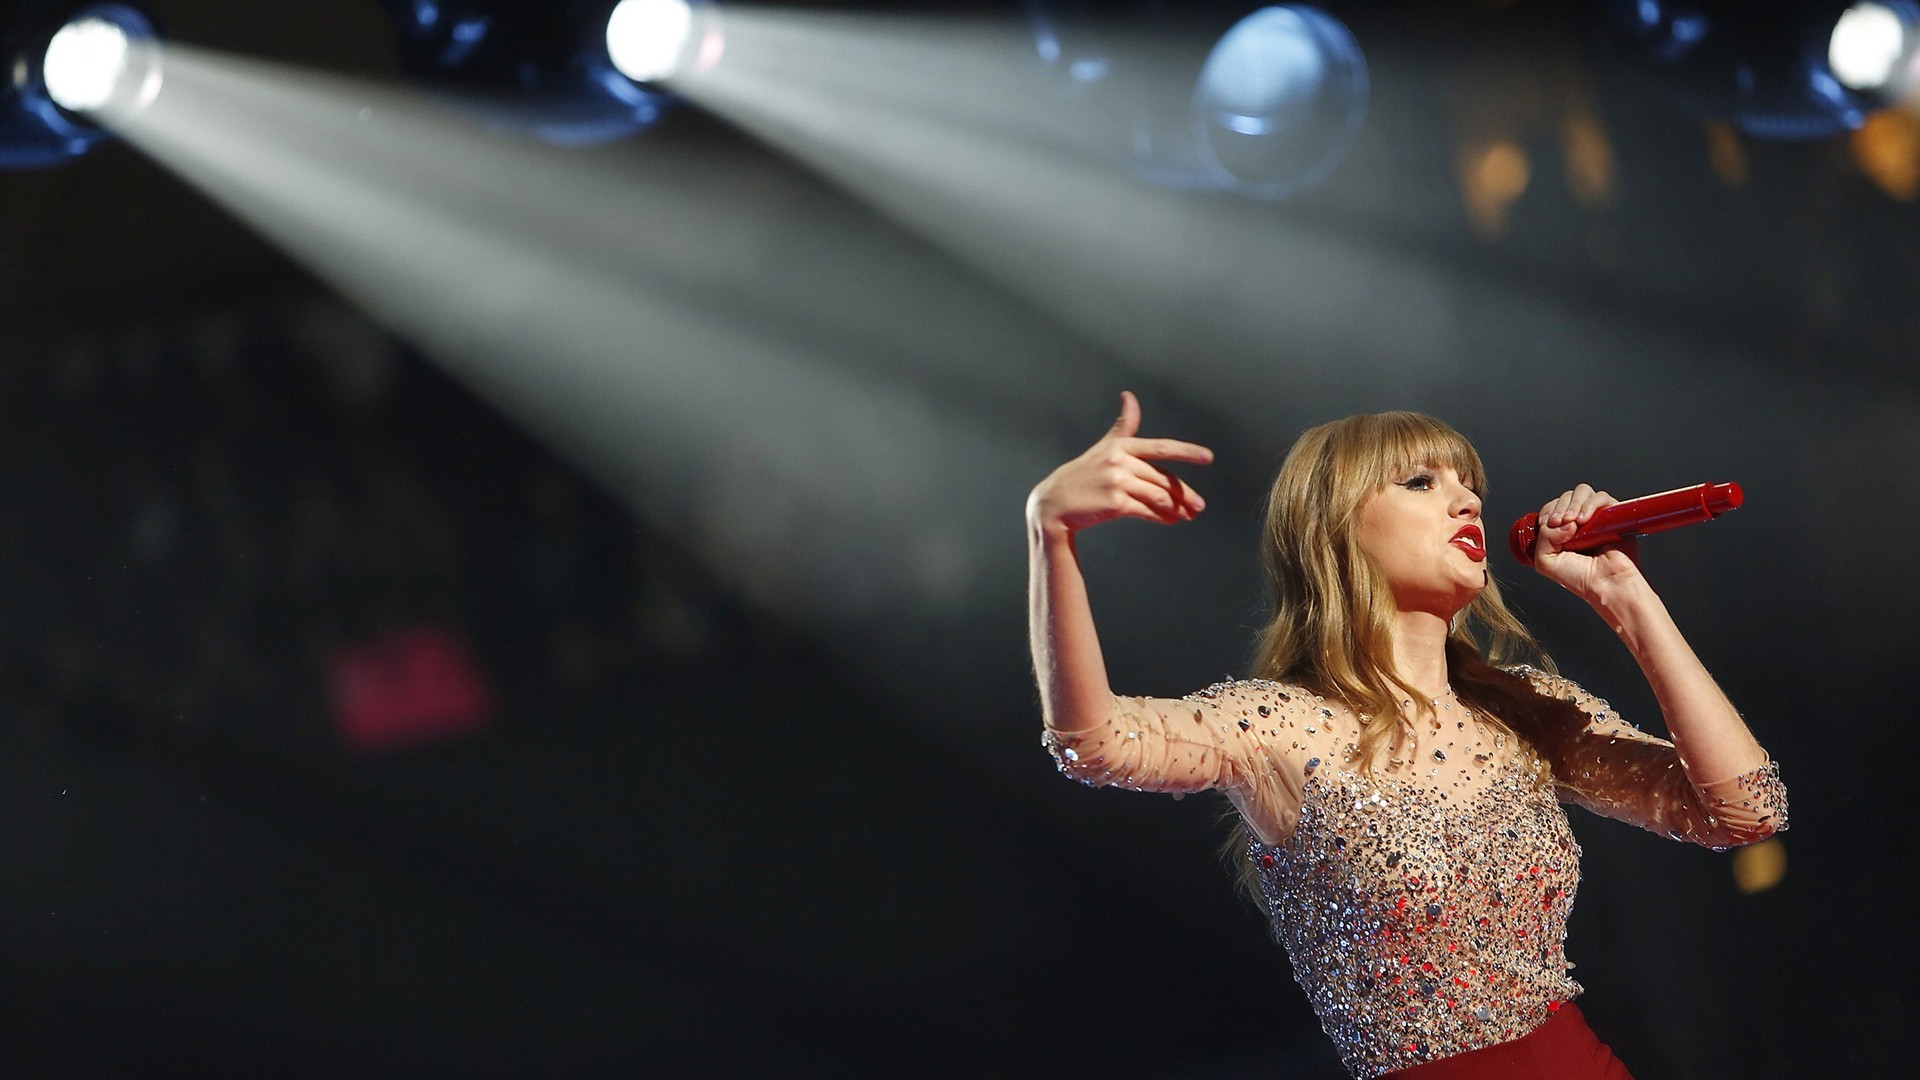 Ciudad en EE.UU cambia su nombre a "Swift City"  en honor a Taylor Swift